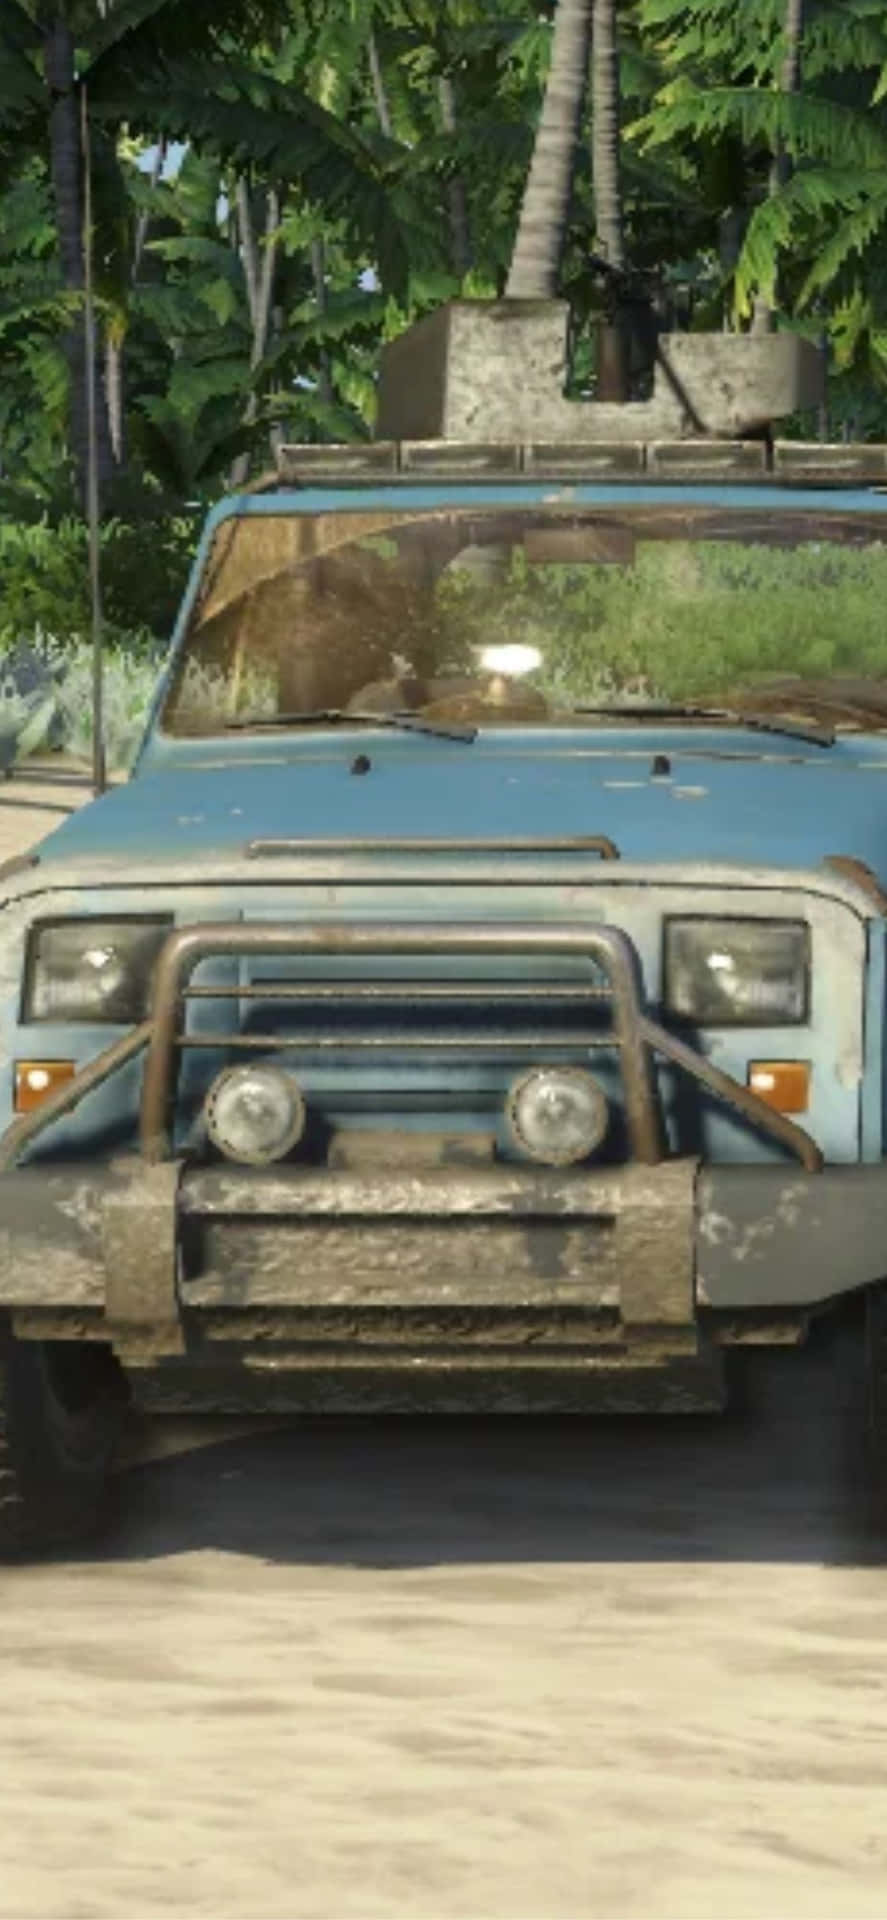 Fondode Pantalla Del Camión Técnico De Far Cry 3 Para Iphone X.